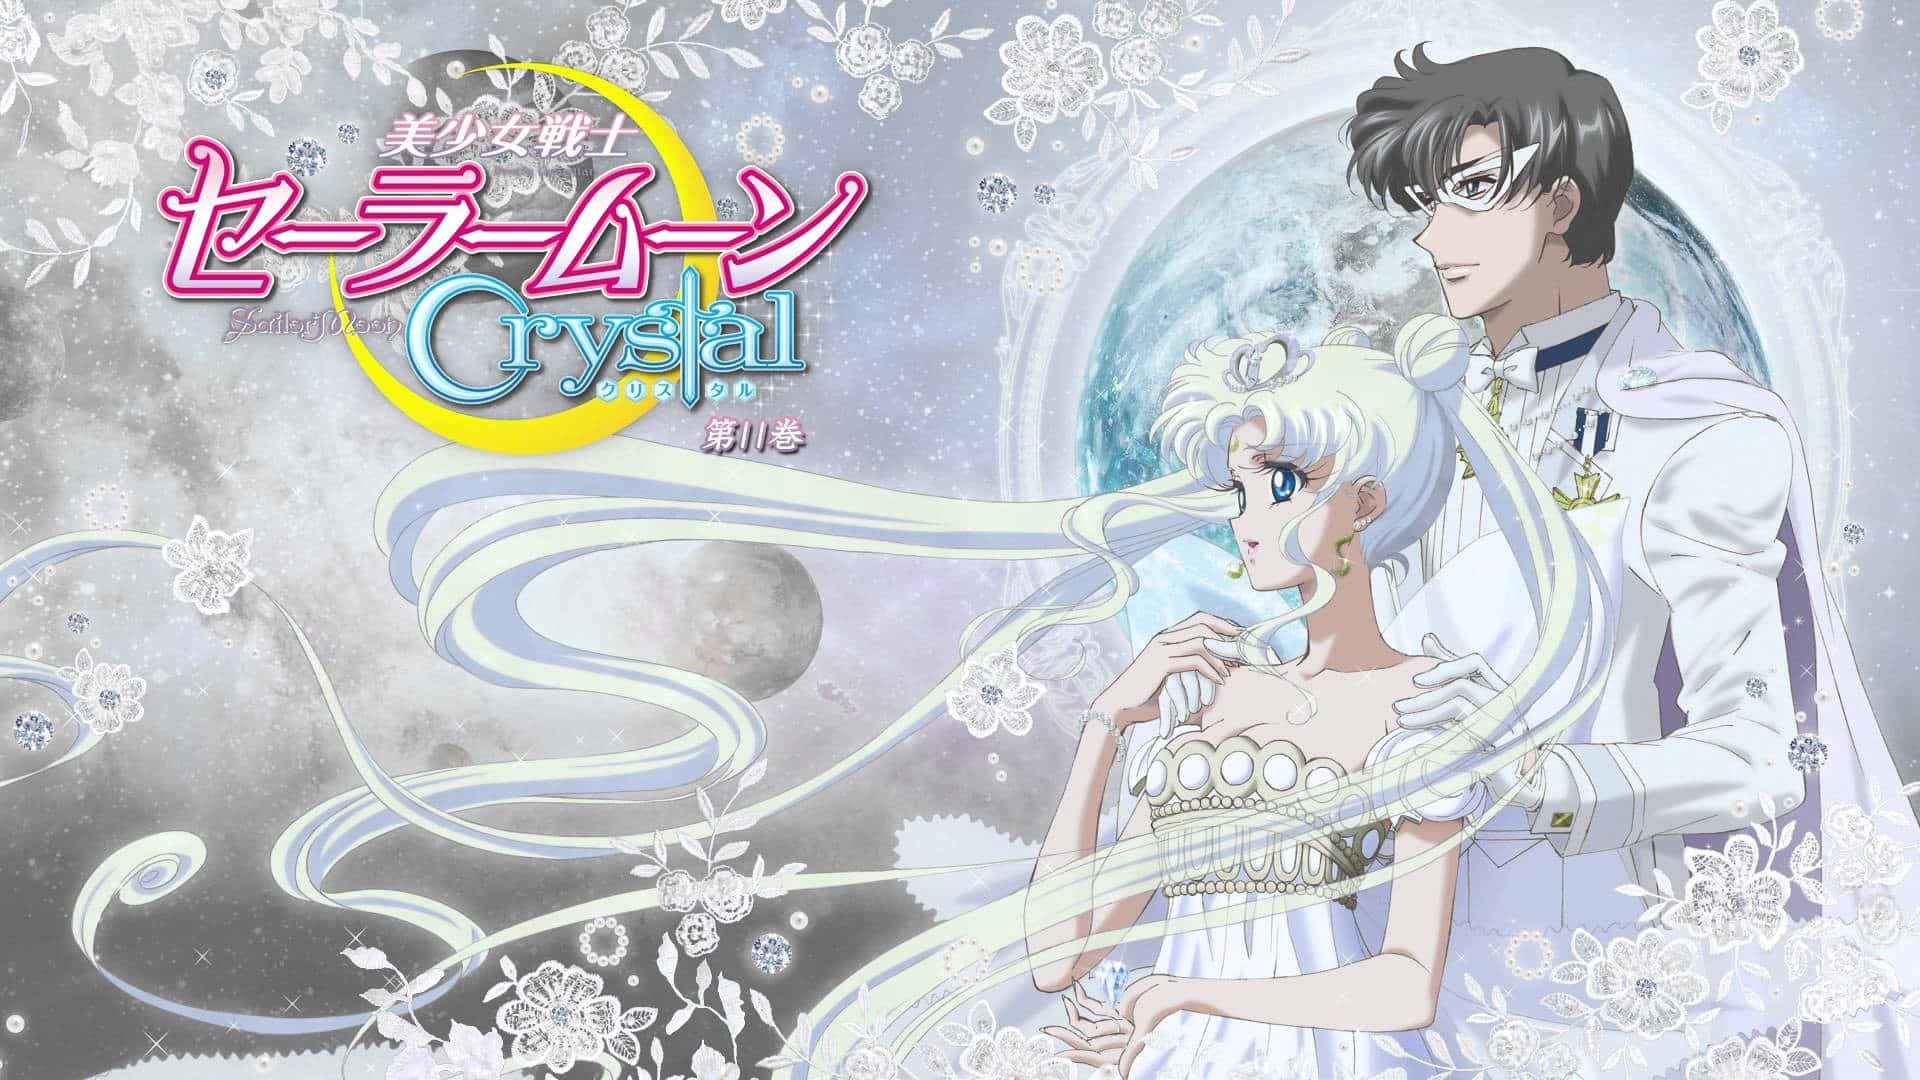 Usagi Tsukino forvandler sig til den smukke Sailor Moon for at redde verden. Wallpaper